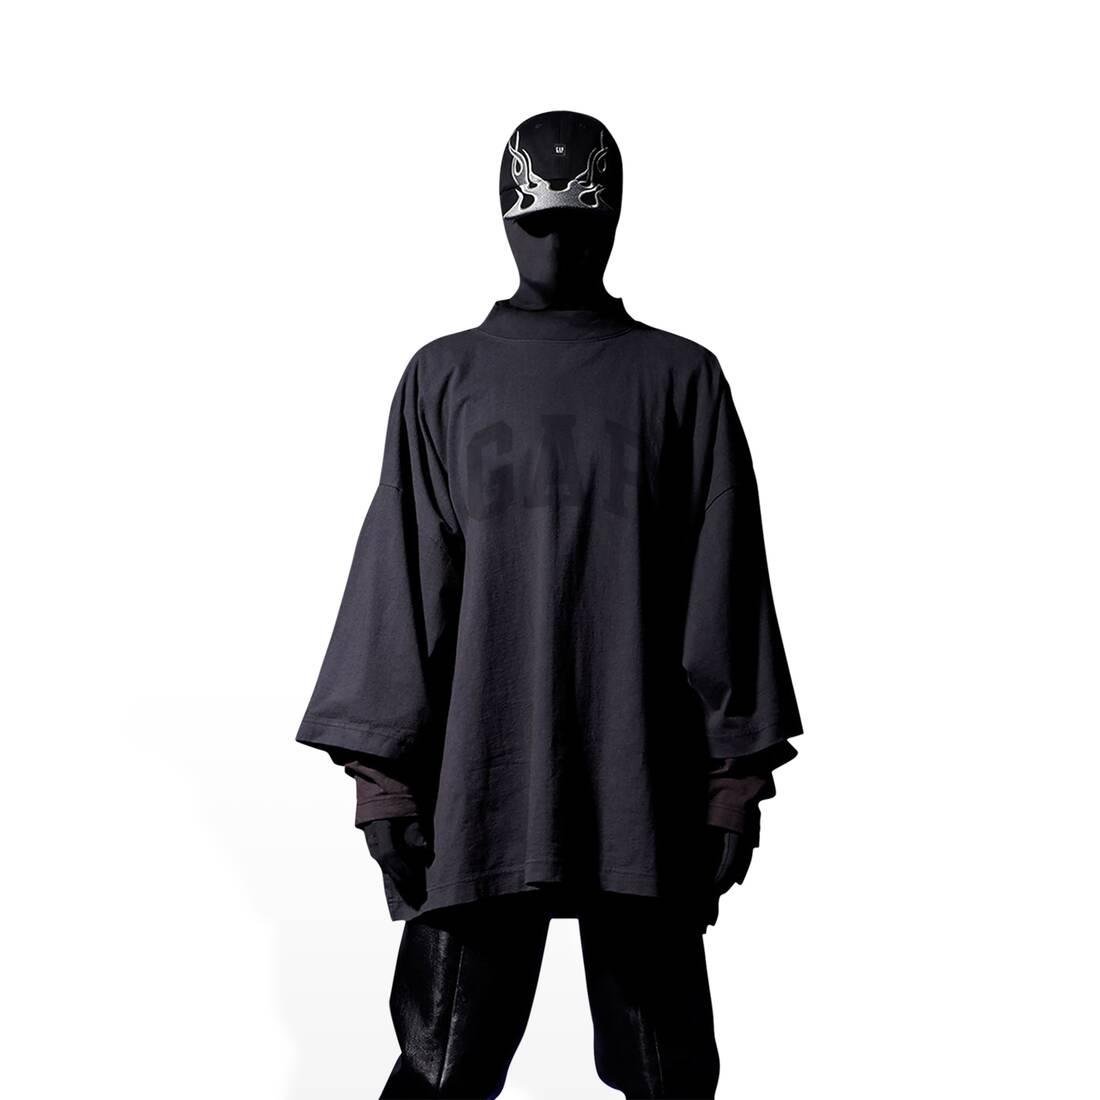 Yeezy Gap Engineered by Balenciaga Dove 3/4 Sleeve Tee Black - Talla XL